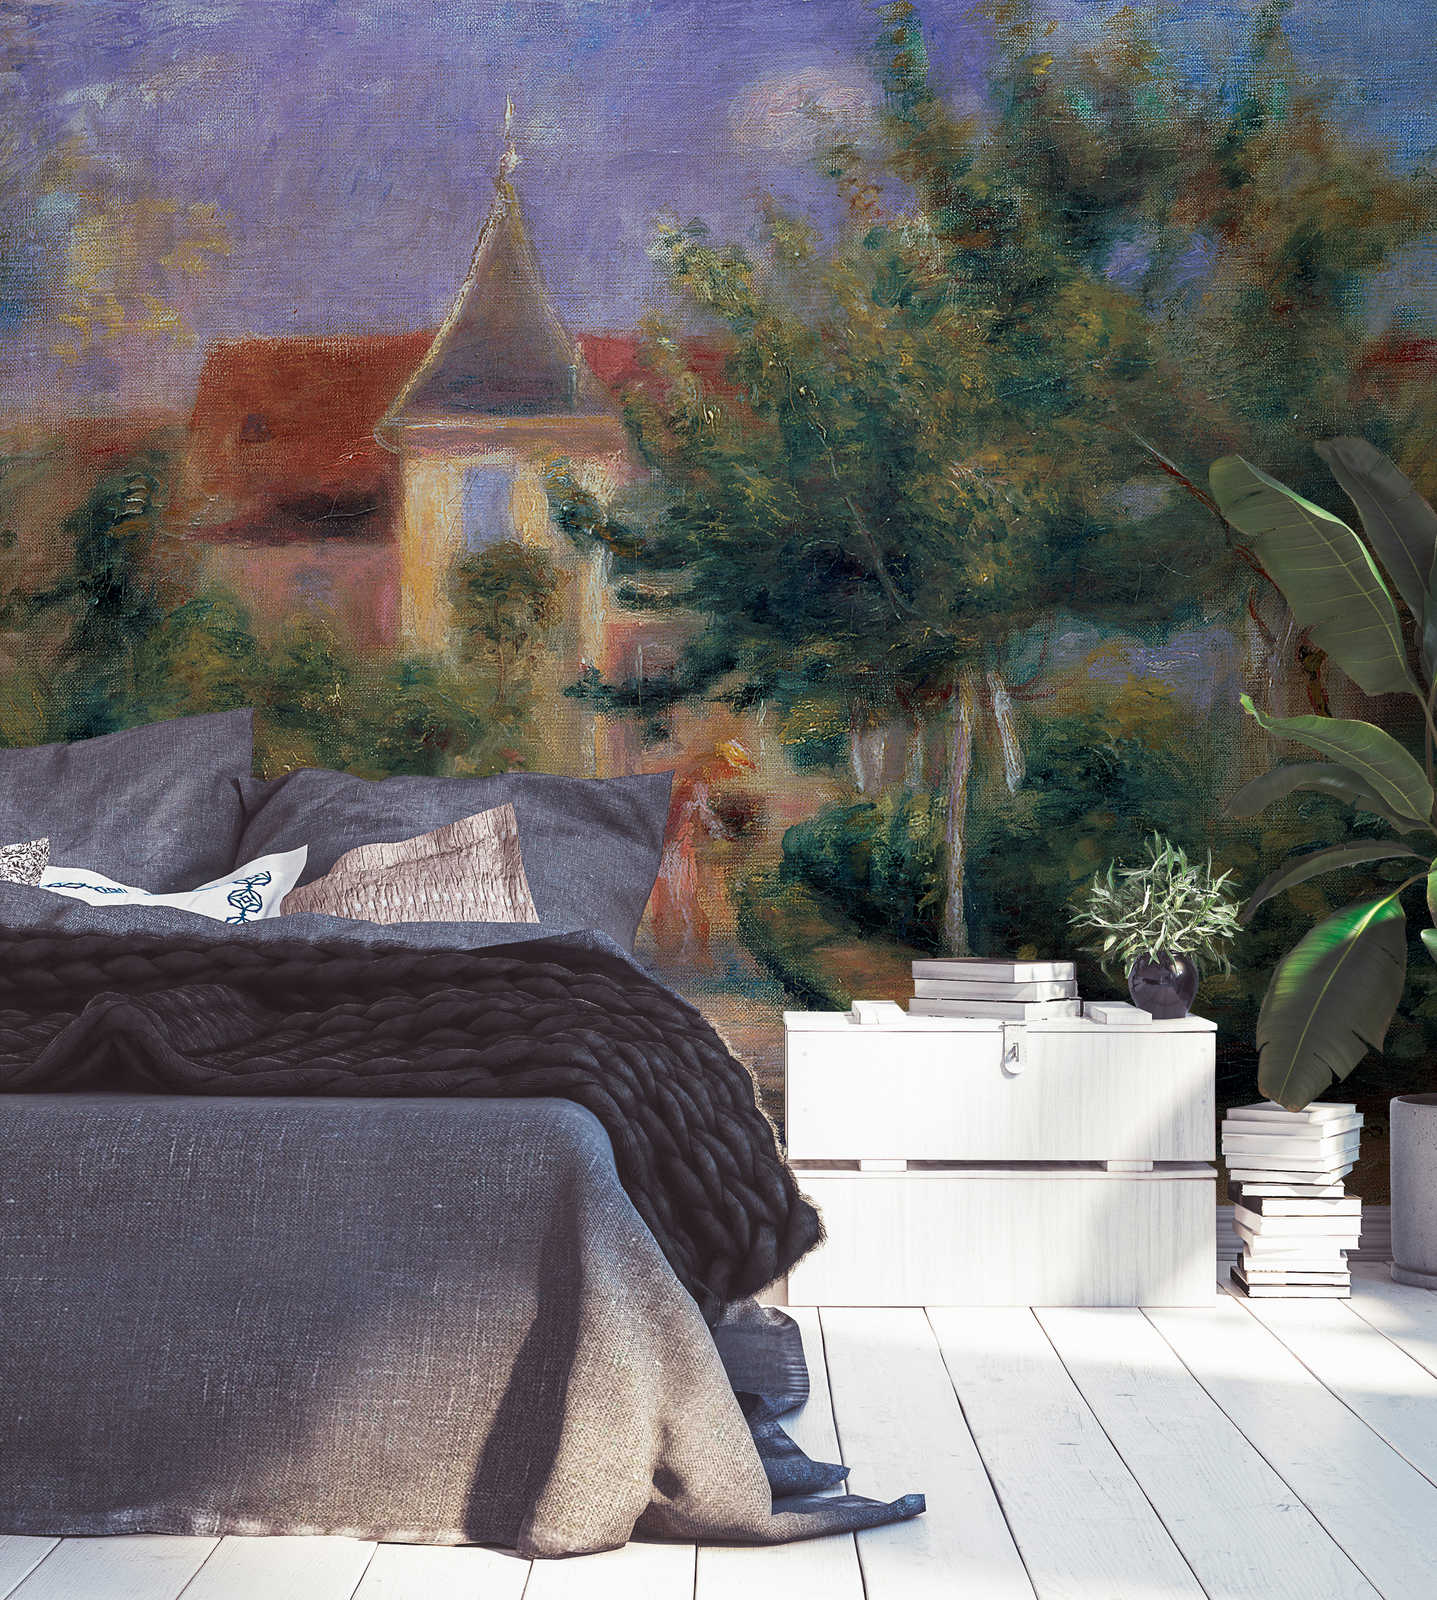             Muurschildering "Renoirs huis in Essoyes" door Pierre Auguste Renoir
        